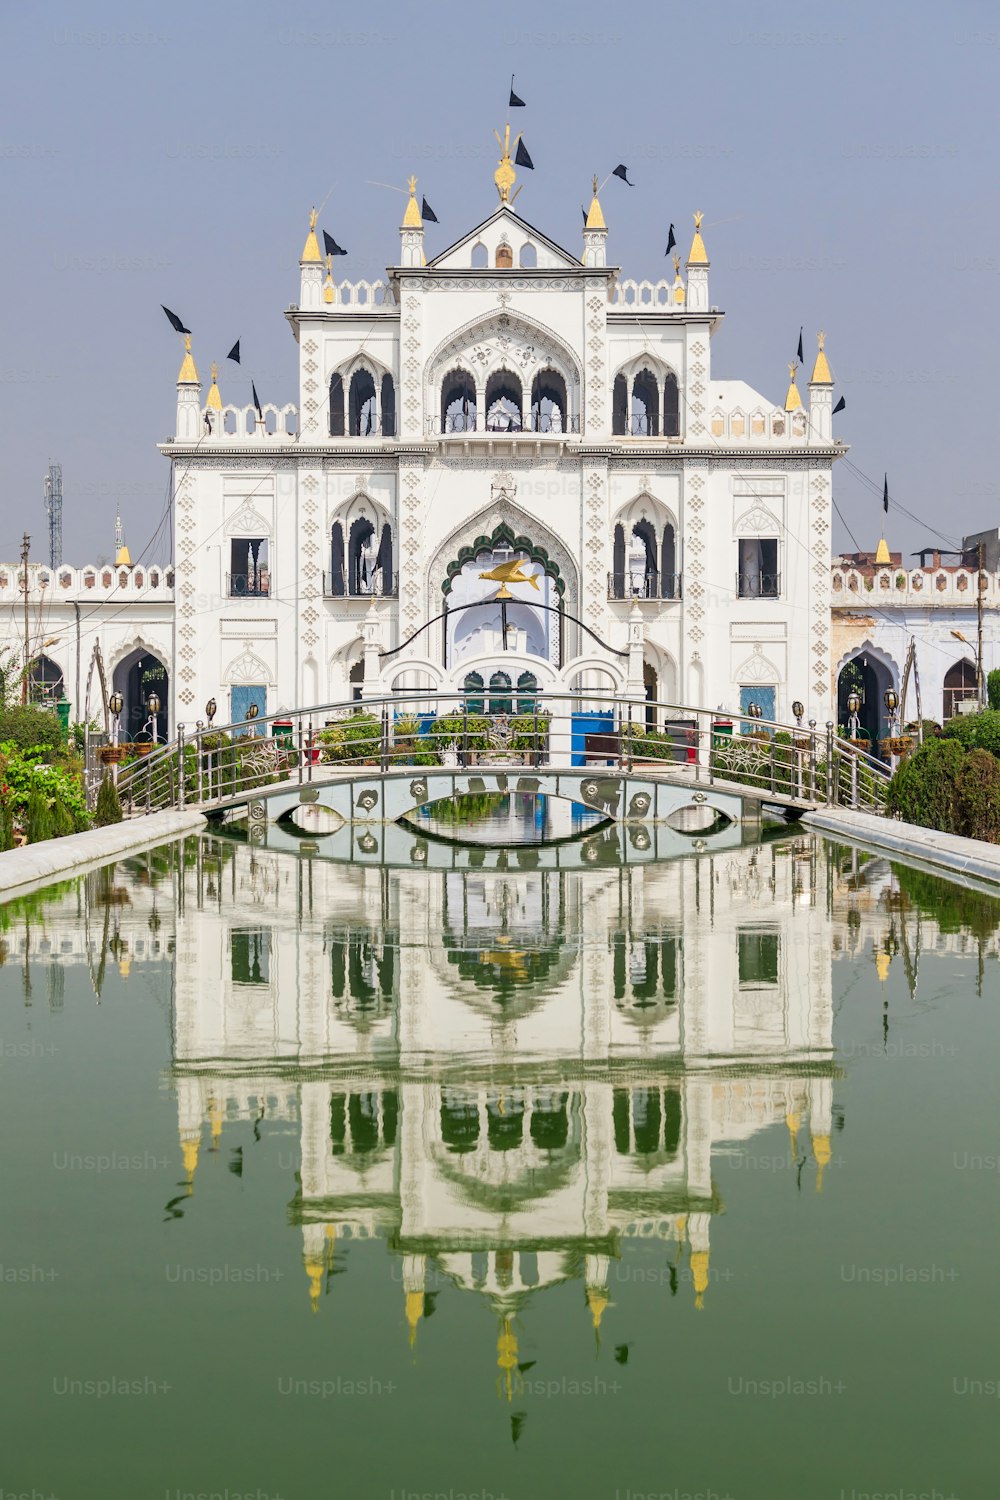 Chota Imambara, también conocido como Hussainabad Imambara es un imponente monumento ubicado en la ciudad de Lucknow en Uttar Pradesh, India